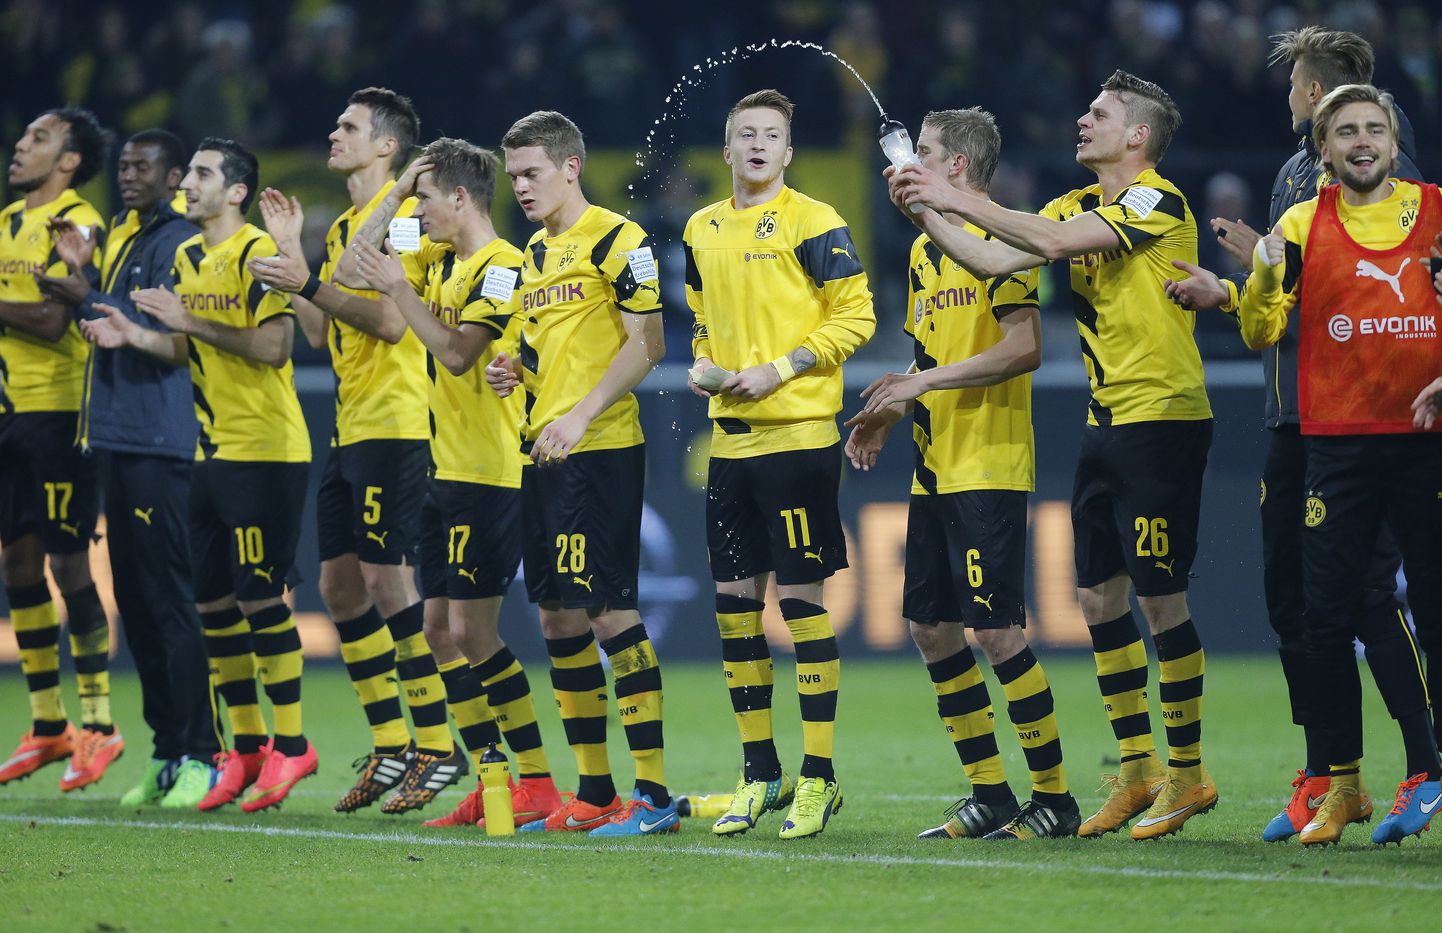 Dortmundi Borussia mängijad võitu tähistamas.